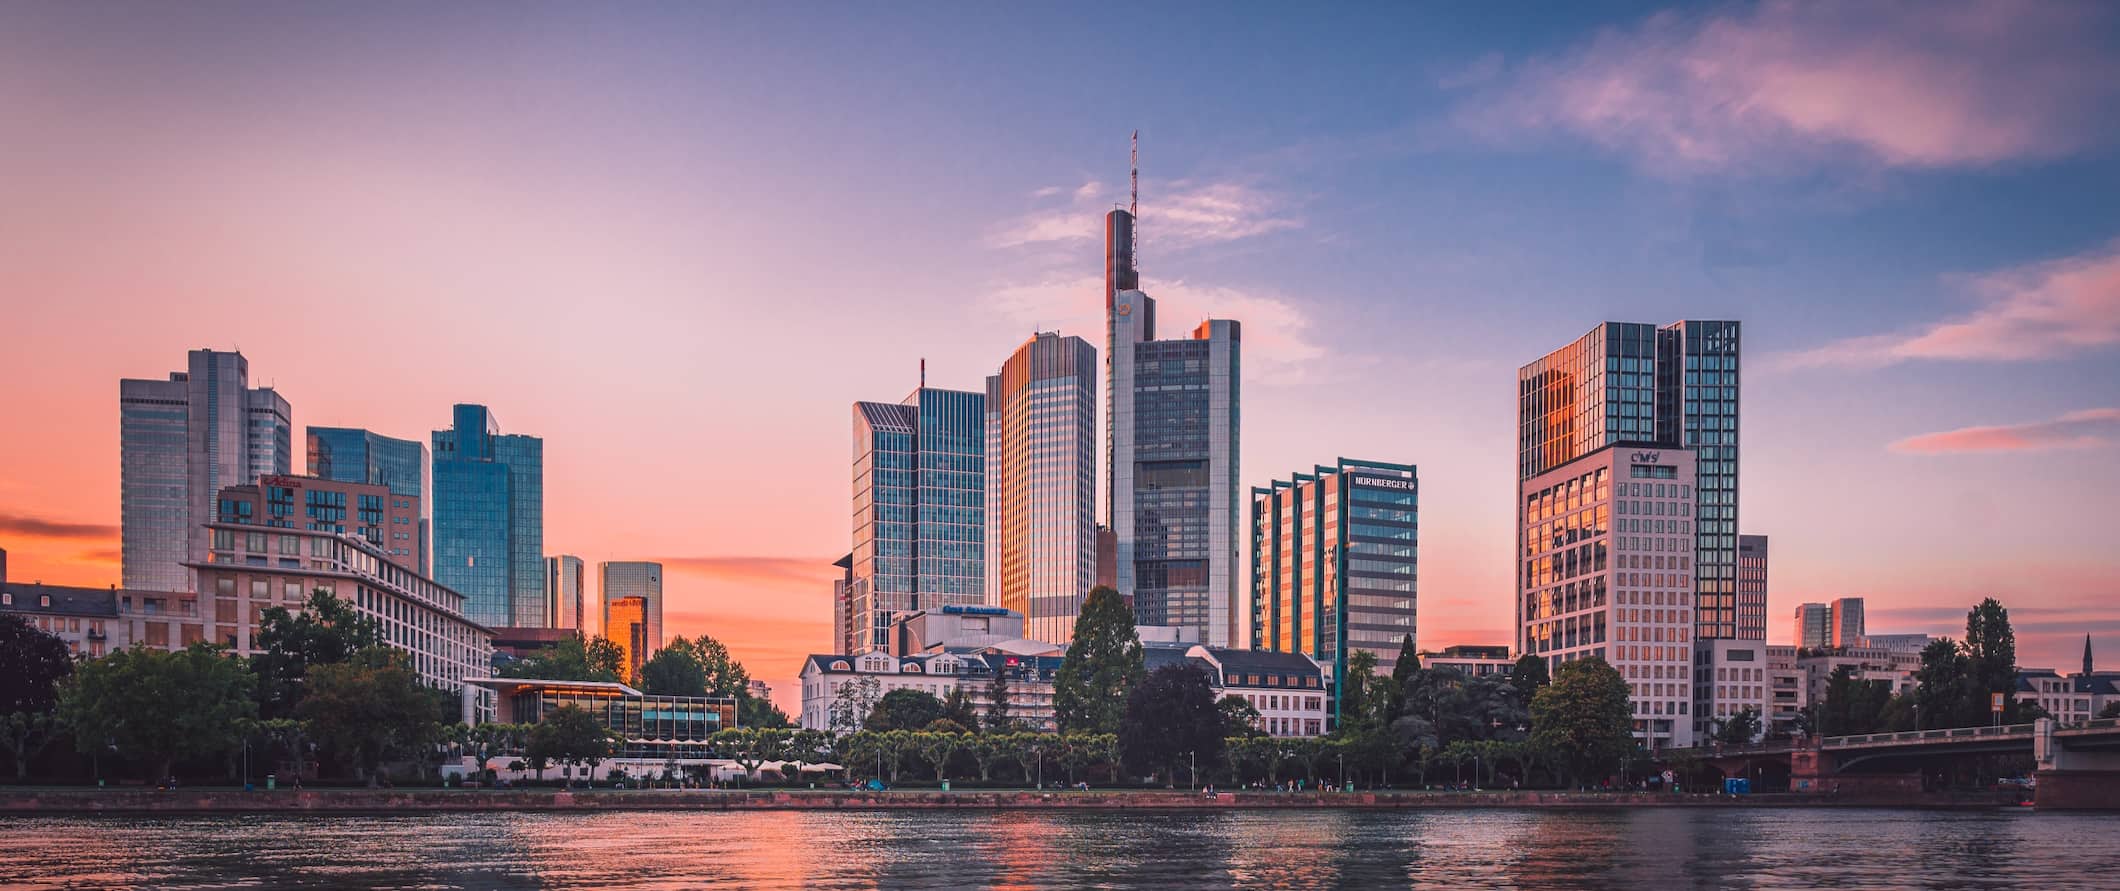 Horizonte de Frankfurt am Main durante um pôr do sol colorido.